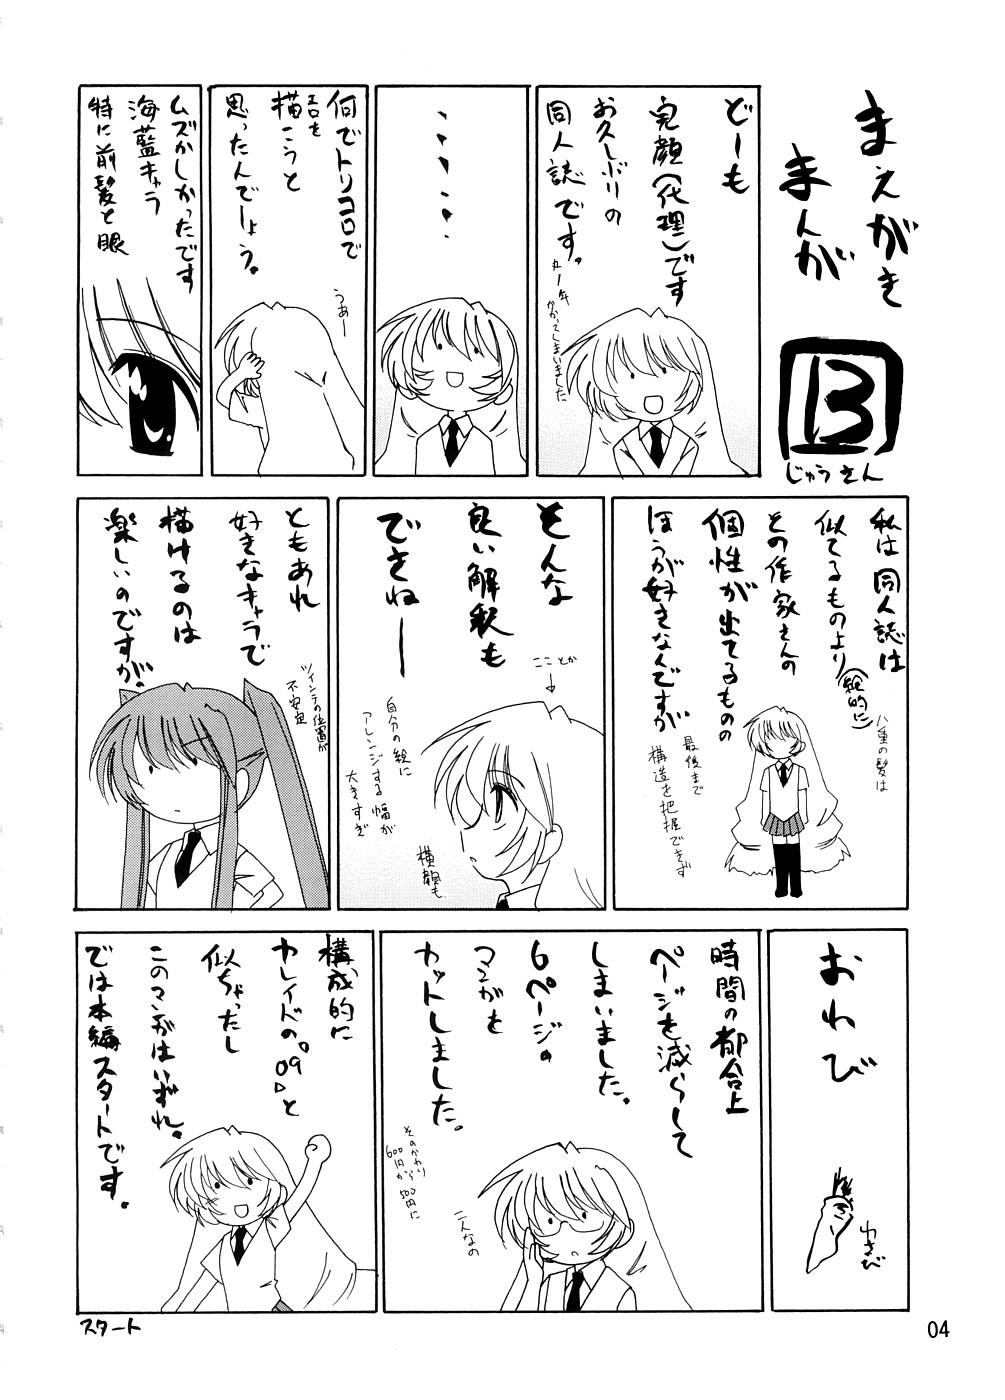 Manga Sangyou Haikibutsu 13 2